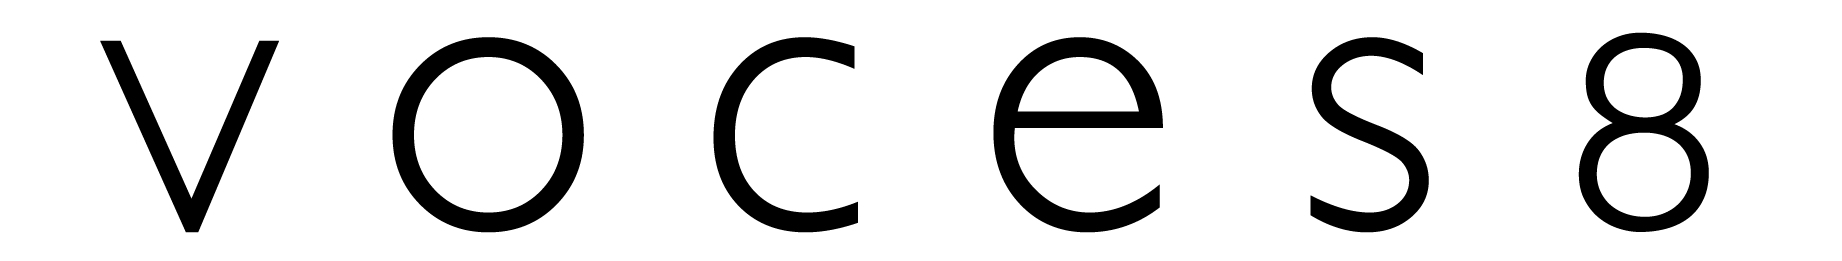 VOCES8 logo